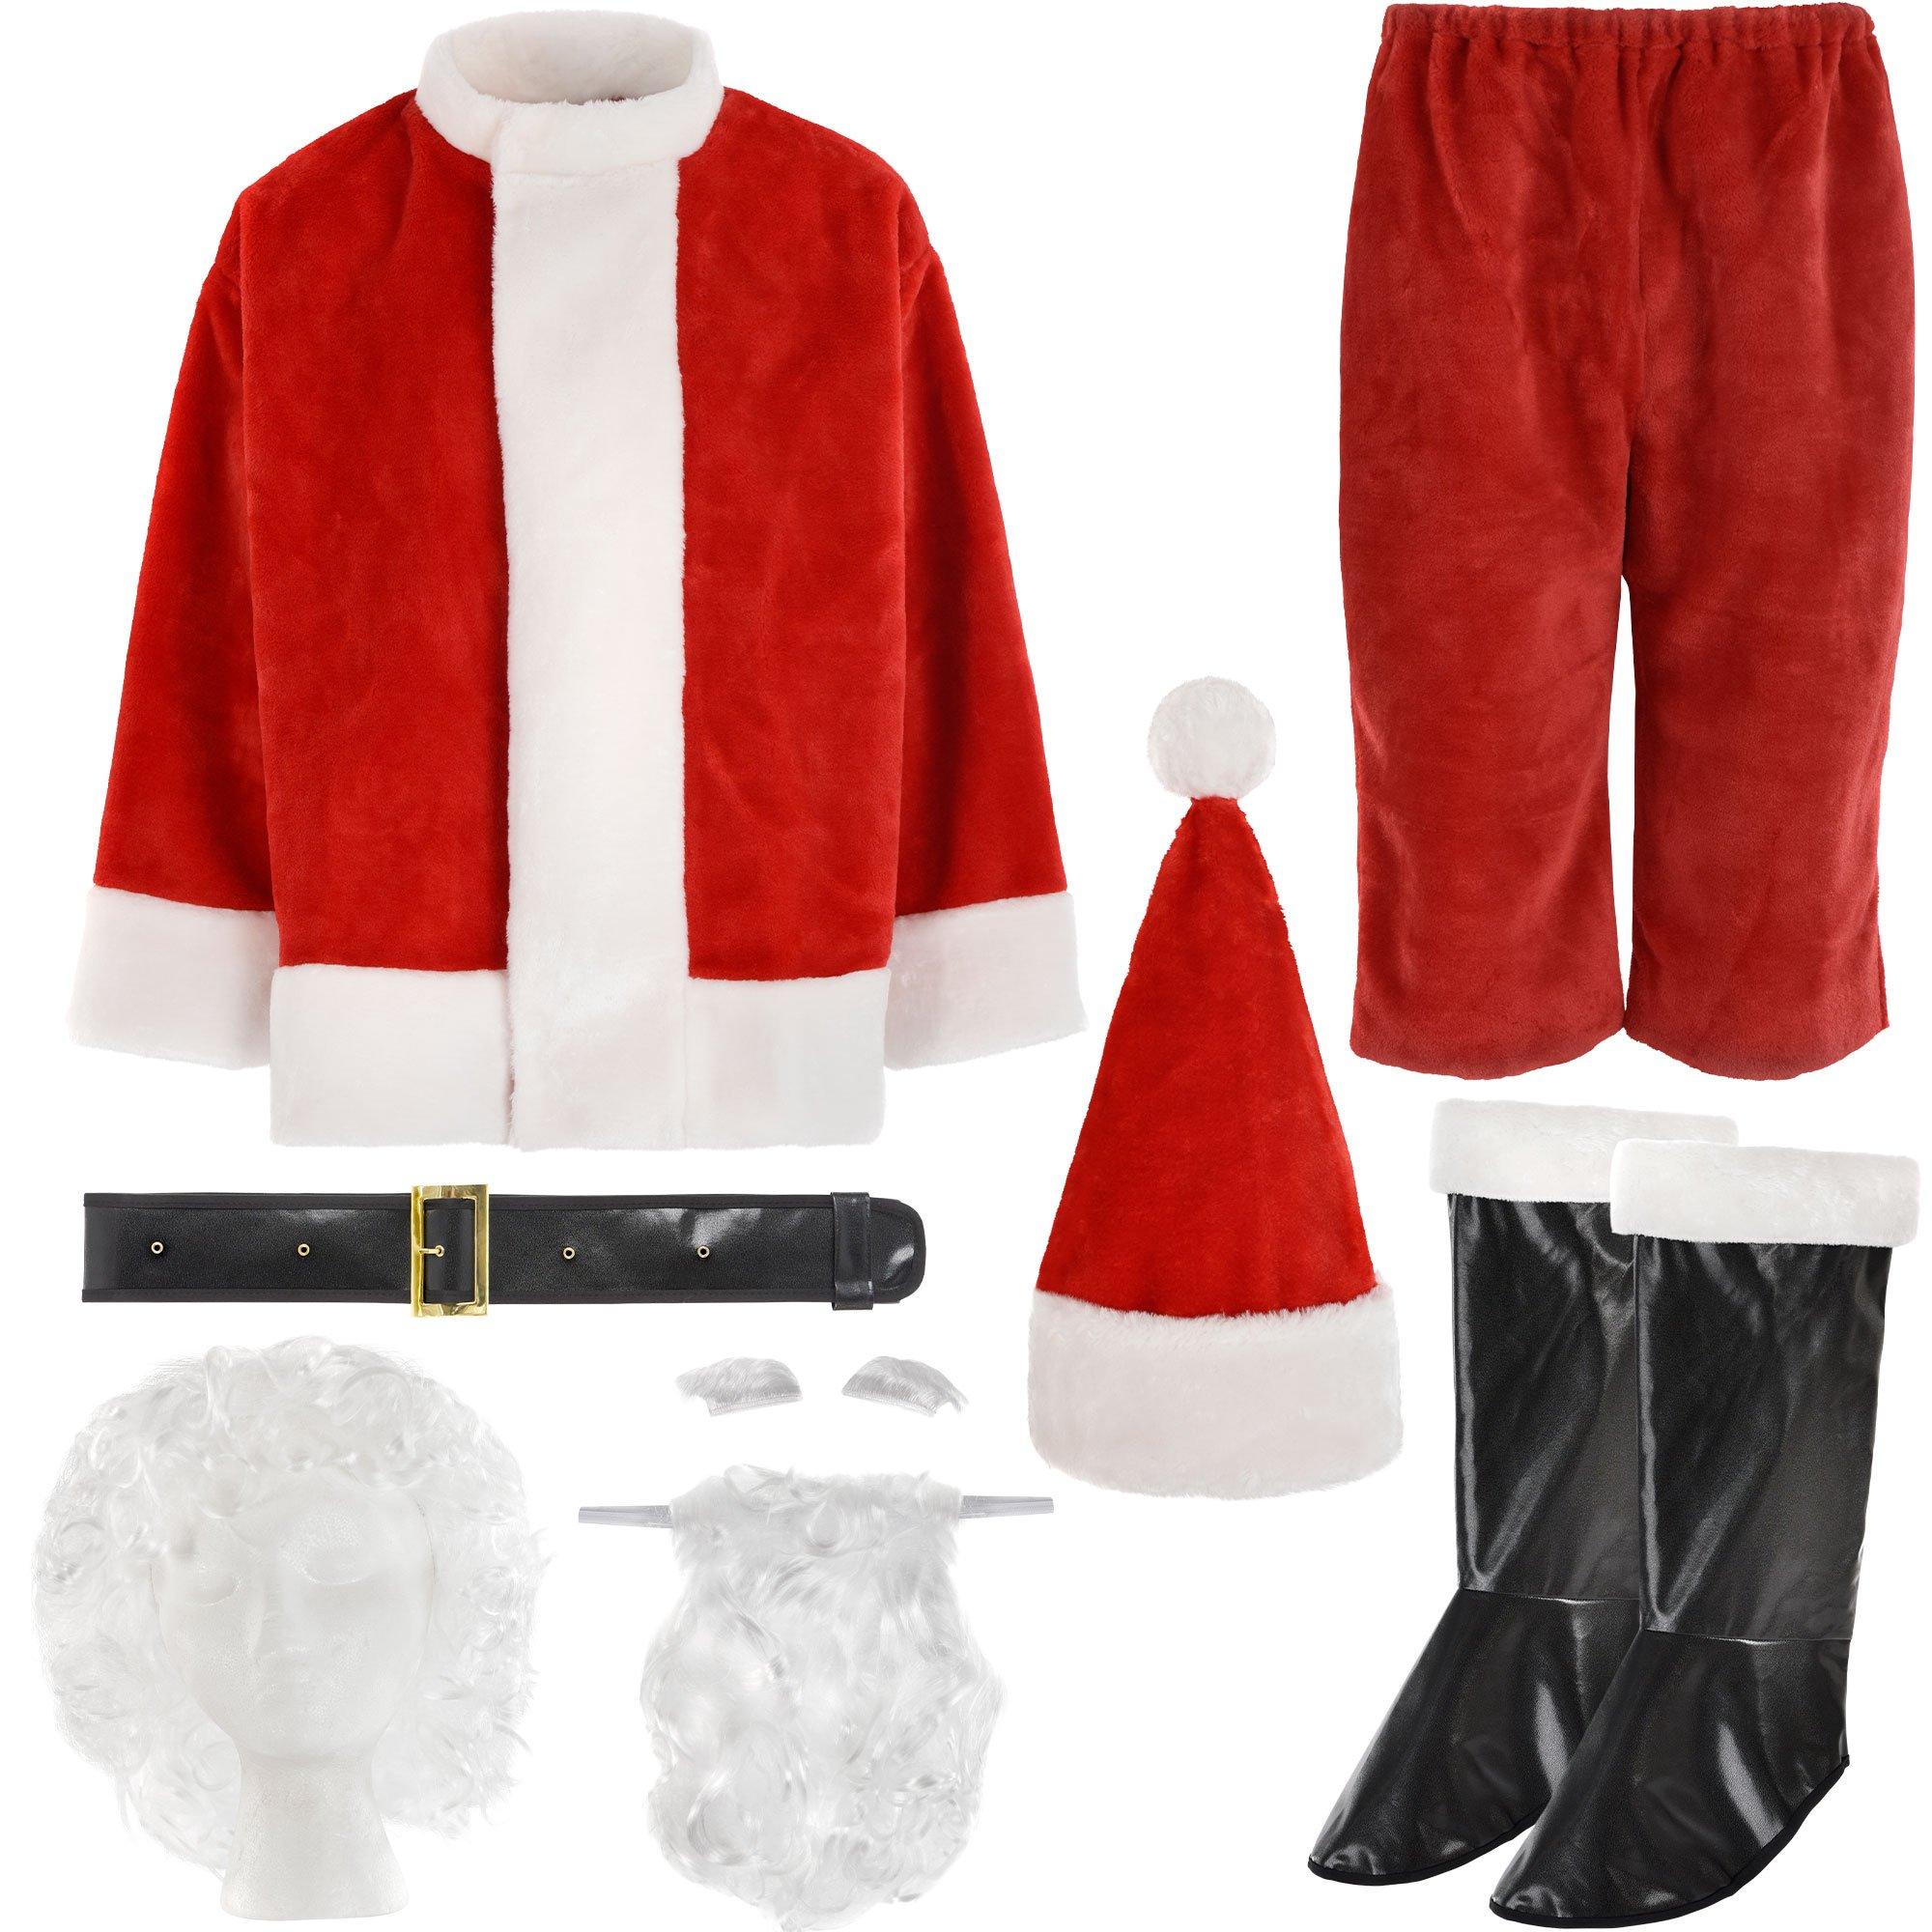 Adult Plush Santa Suit